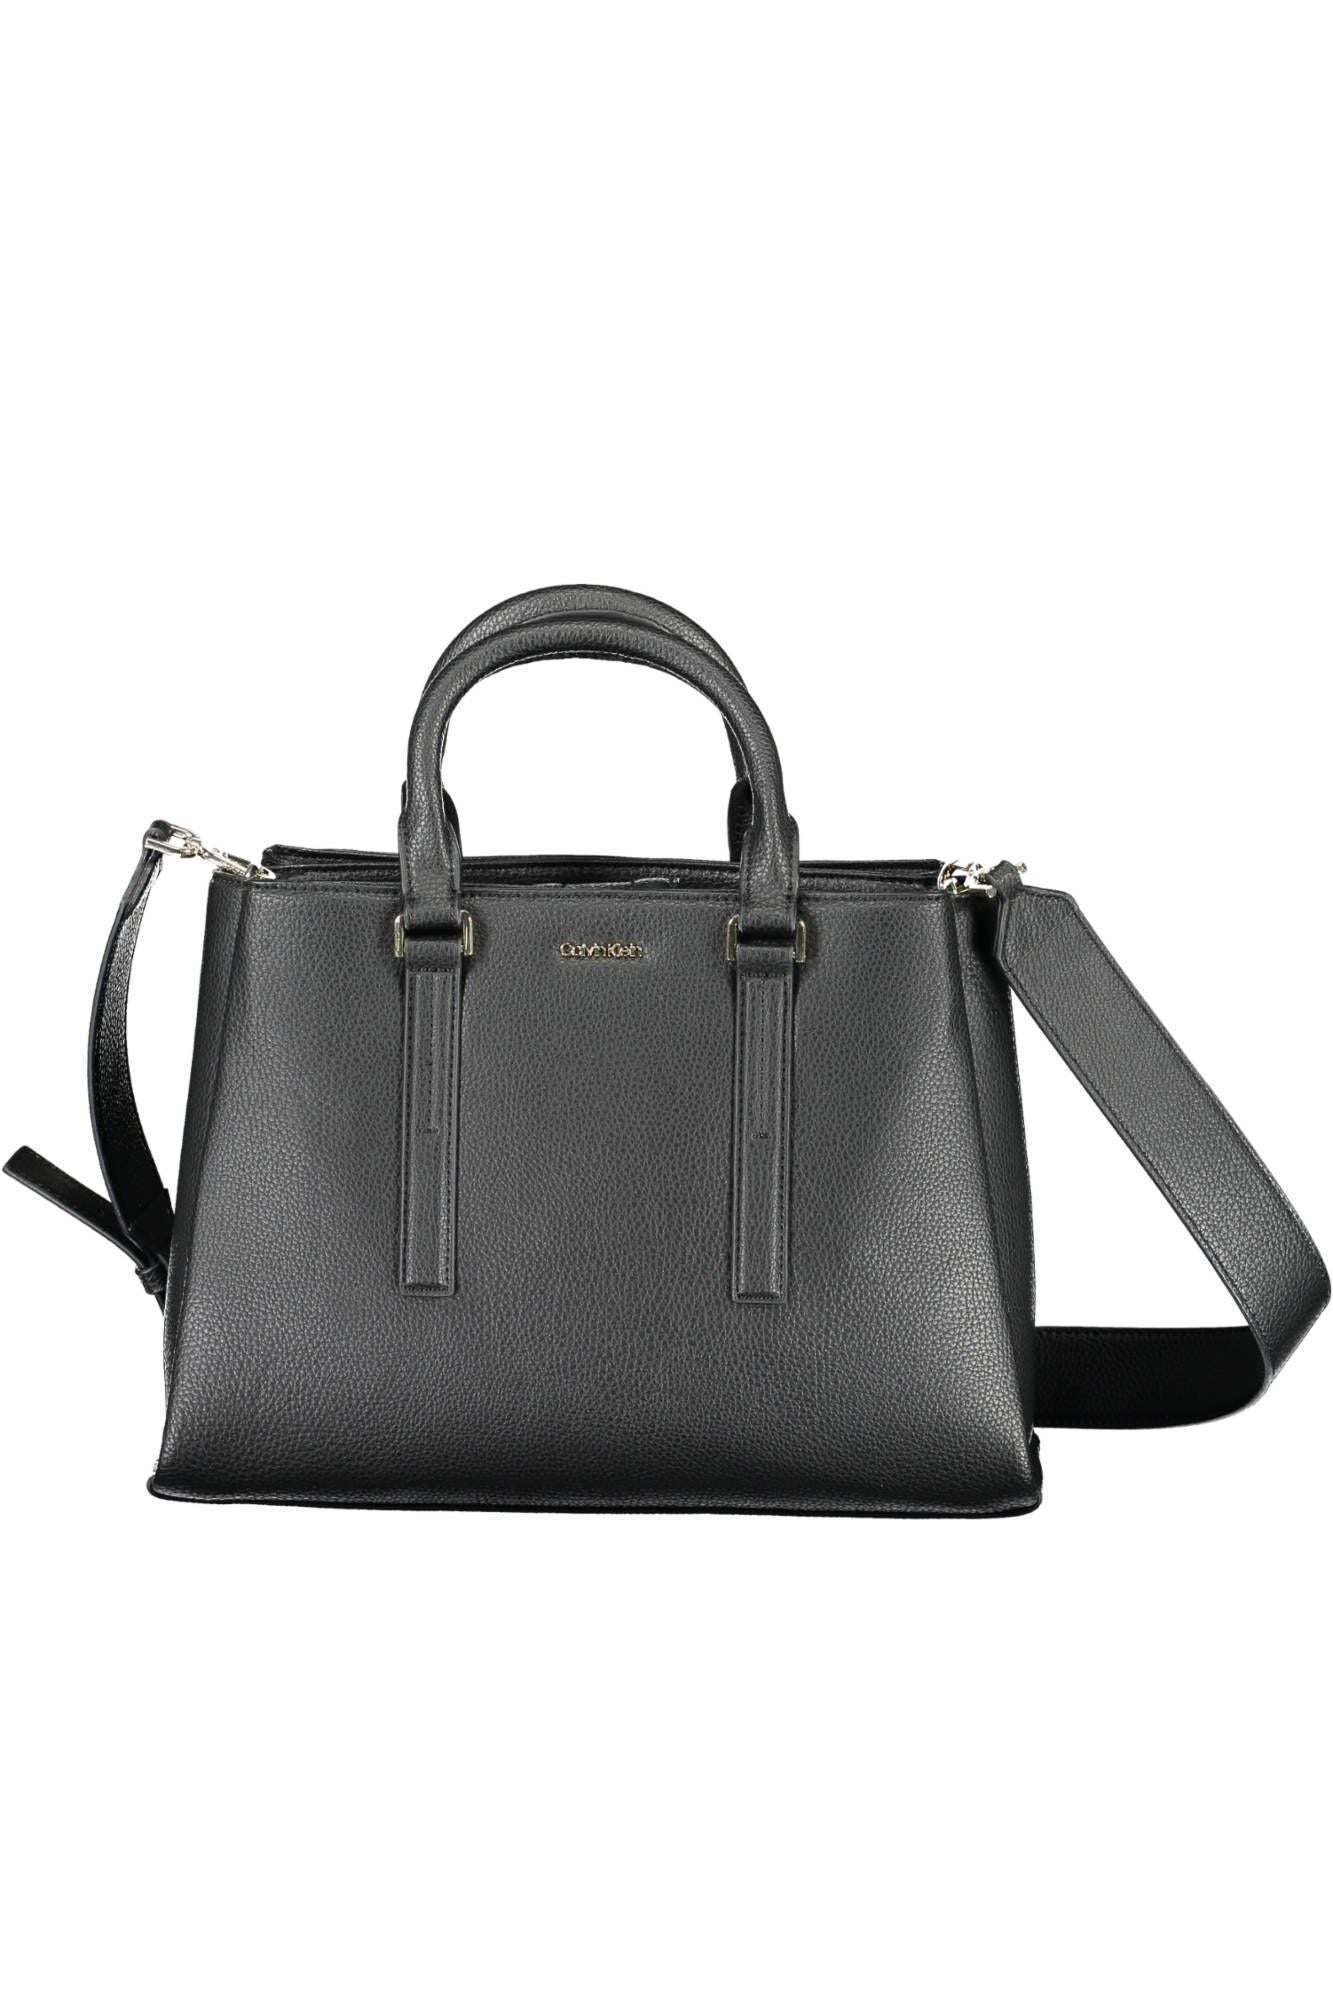 Elegant Black Shoulder Handbag for Everyday Elegance